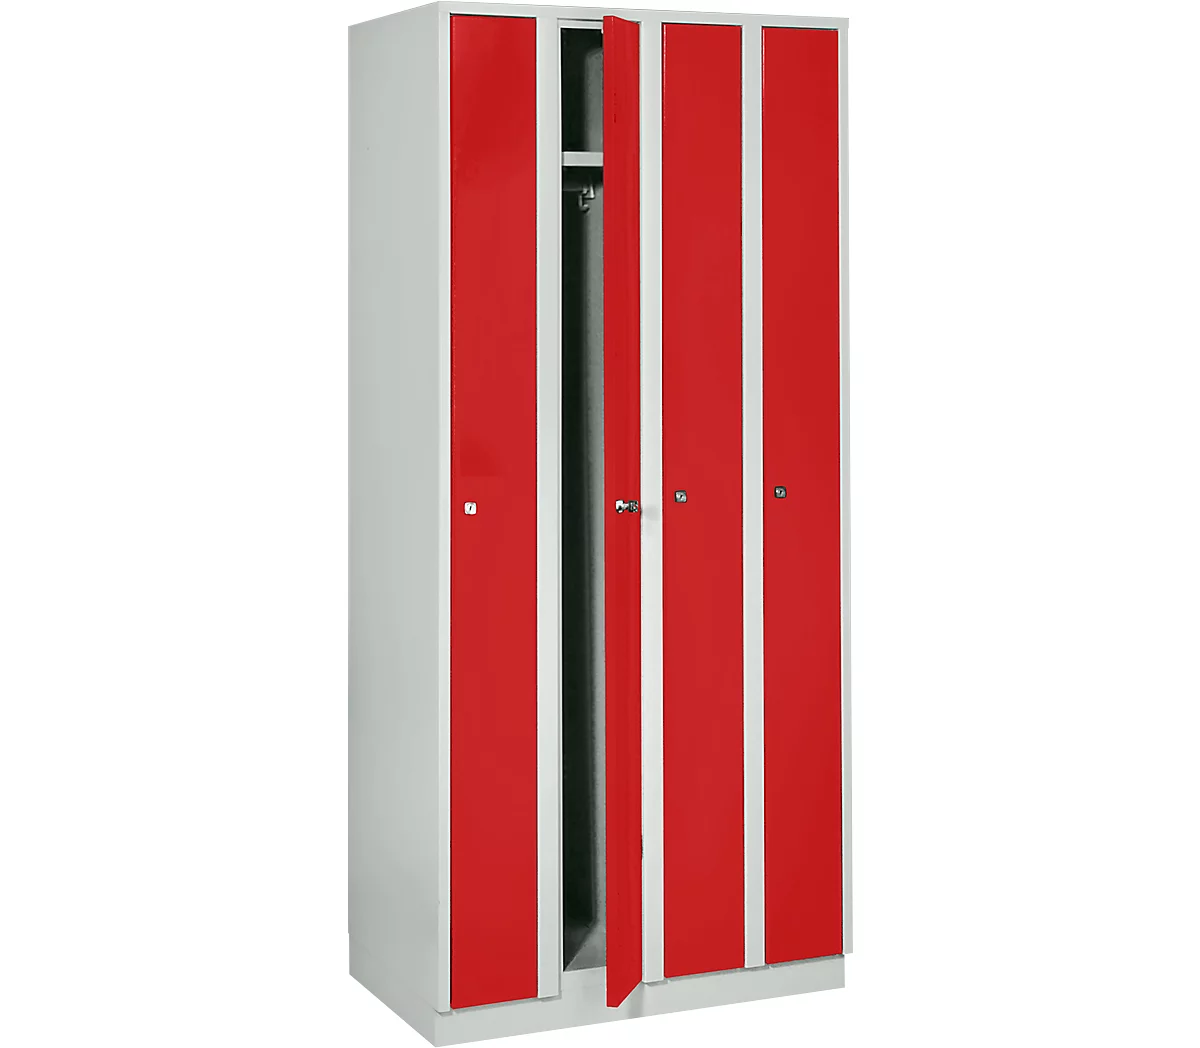 Taquilla que ahorra espacio, anchura del compartimento 200 mm, con cerradura, 4 compartimentos, rojo